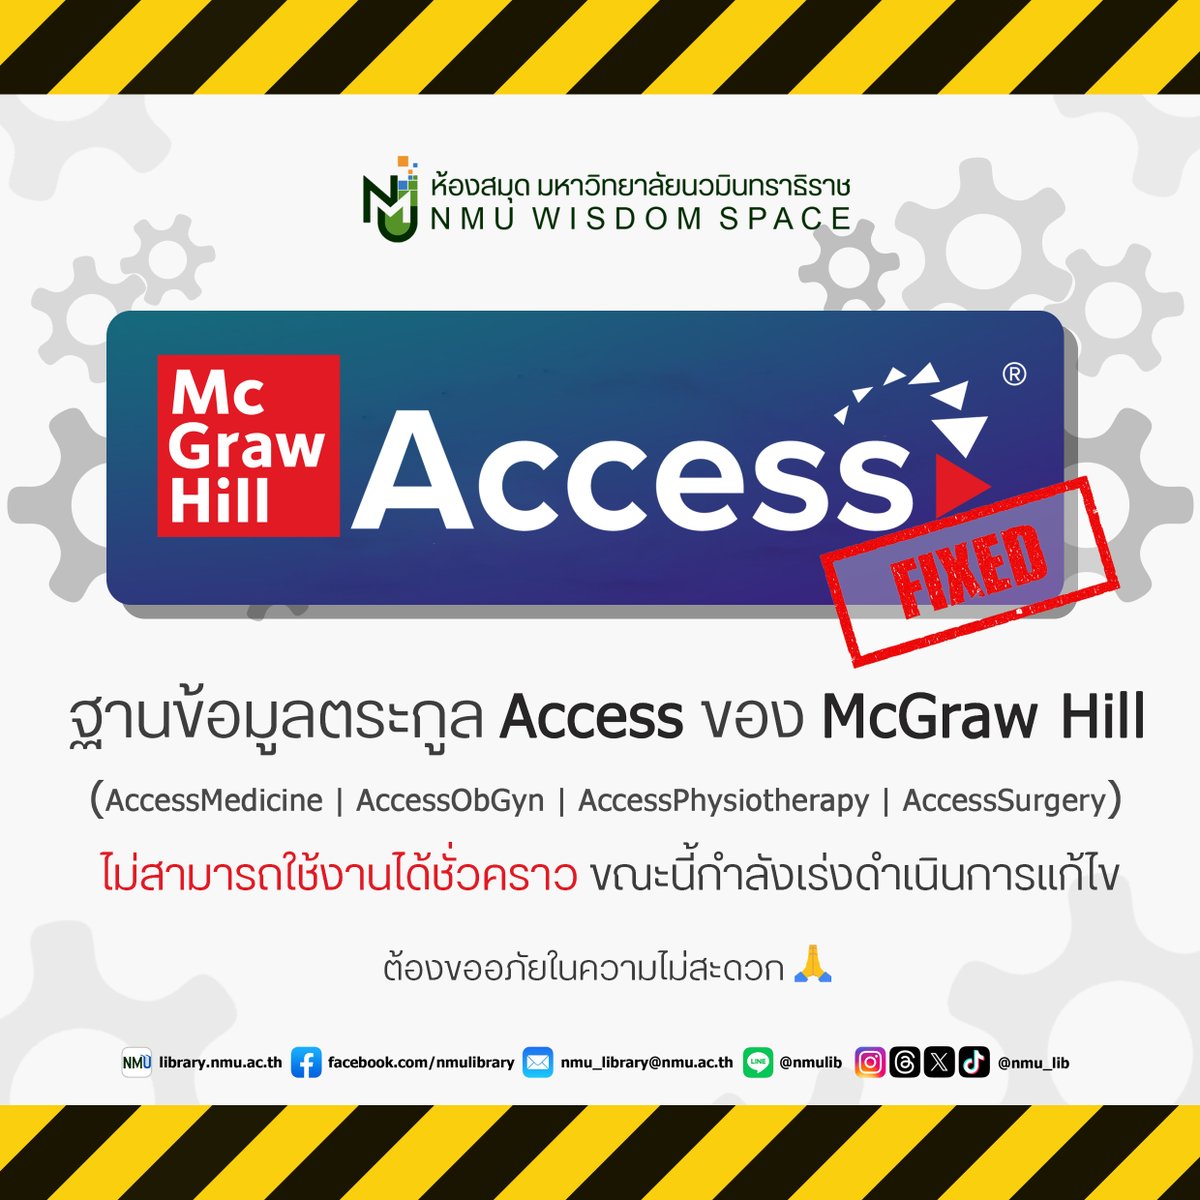 📢ประกาศ📢 ฐานข้อมูลตระกูล Access ของ McGraw Hill (AccessMedicine, AccessObGyn, AccessPhysiotheraphy, AccessSurgery) ไม่สามารถใช้งานได้ชั่วคราว ขณะนี้กำลังเร่งดำเนินการแก้ไข 🛠️ ต้องขออภัยในความไม่สะดวก 🙏
#NMUWisdomSpace #มหาลัยนวมินทราธิราช